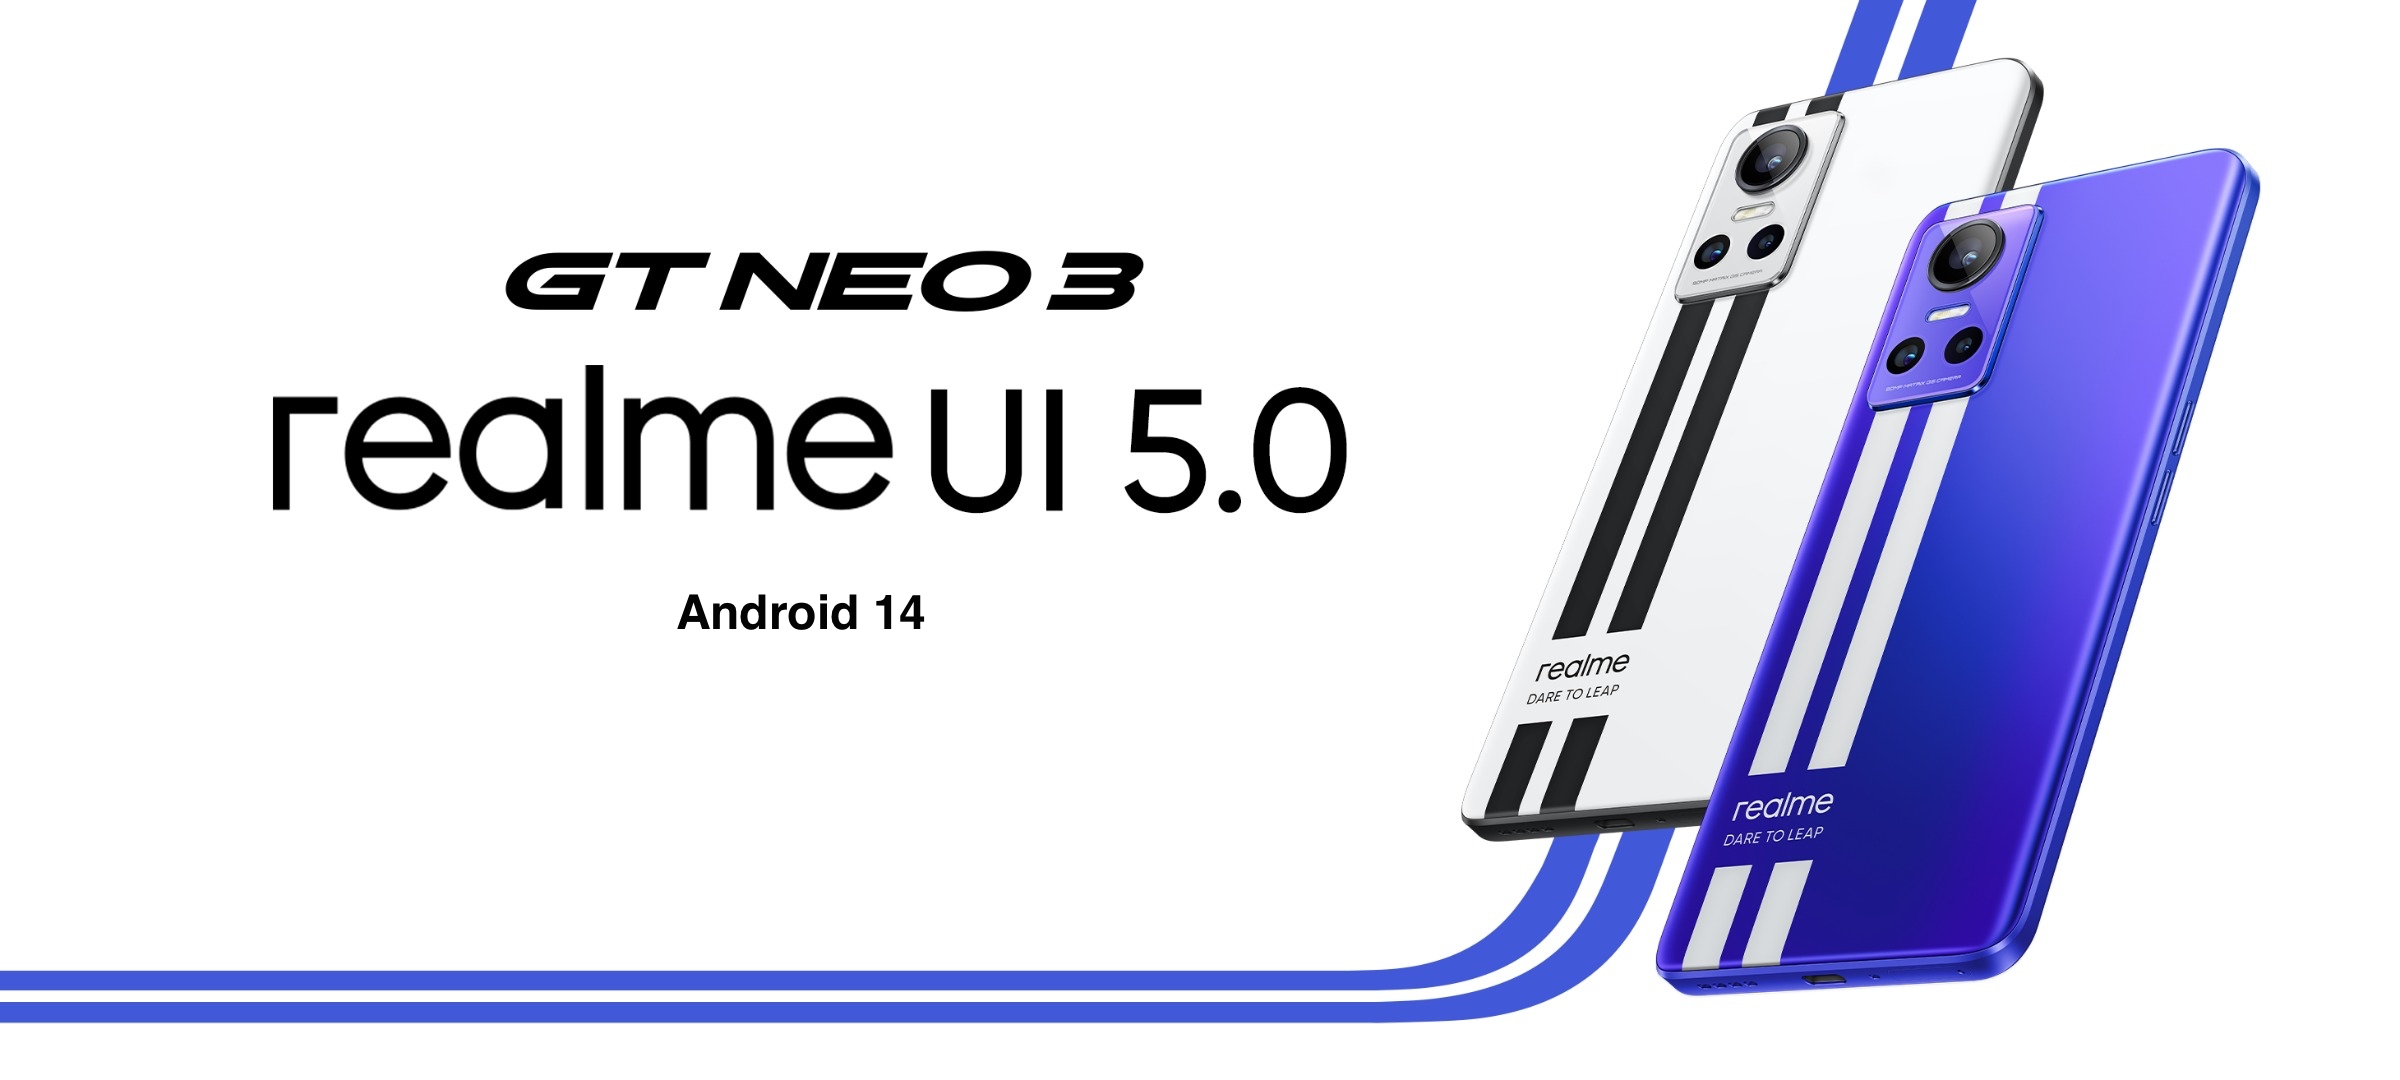 realme GT Neo 3 ha recibido la versión beta de realme UI 5.0 con Android 14 a bordo